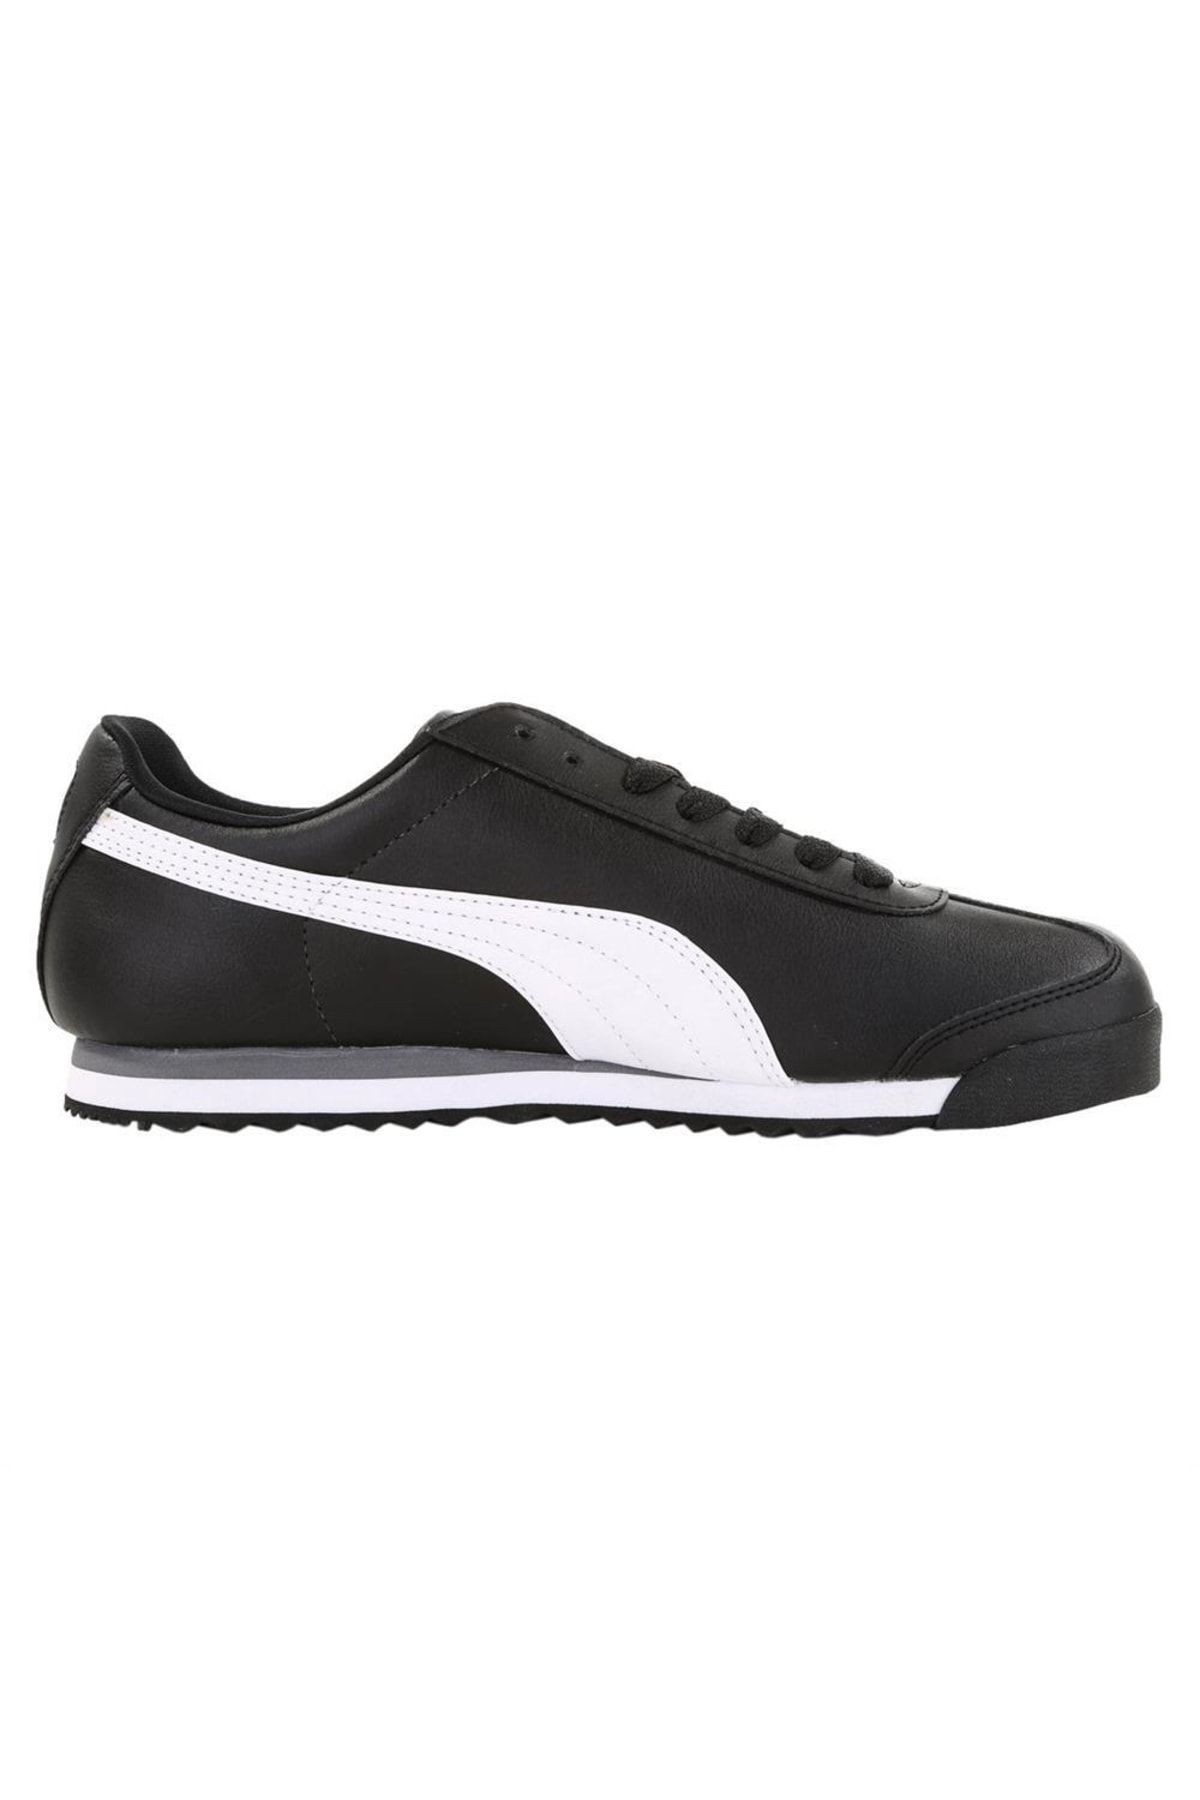 Puma Roma Basic 353572 11 Erkek Siyah-beyaz Spor Ayakkabı